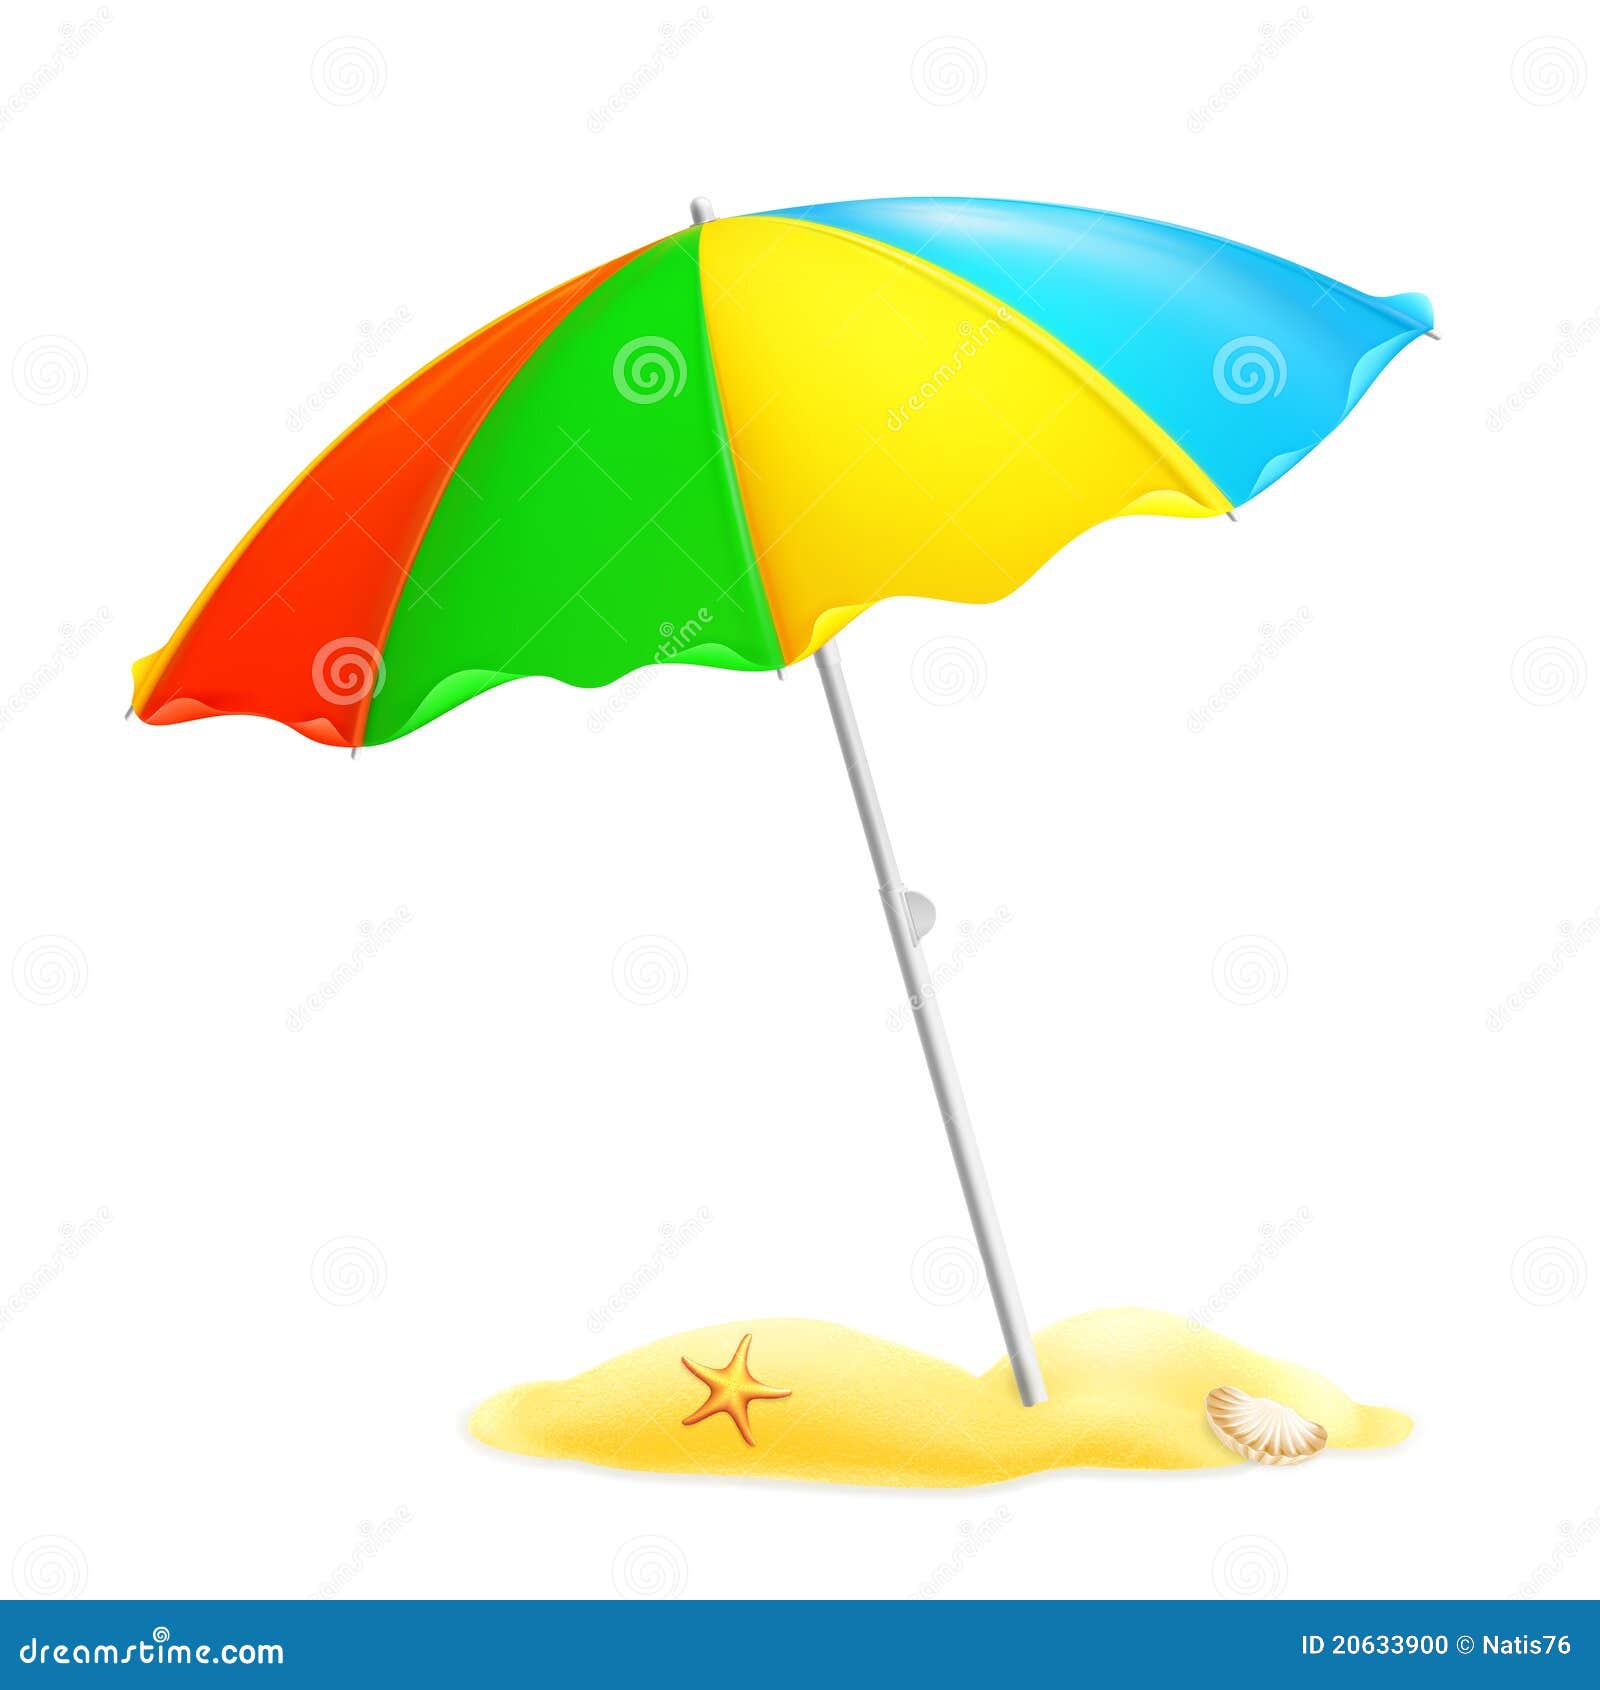 clipart gratuit parasol - photo #21